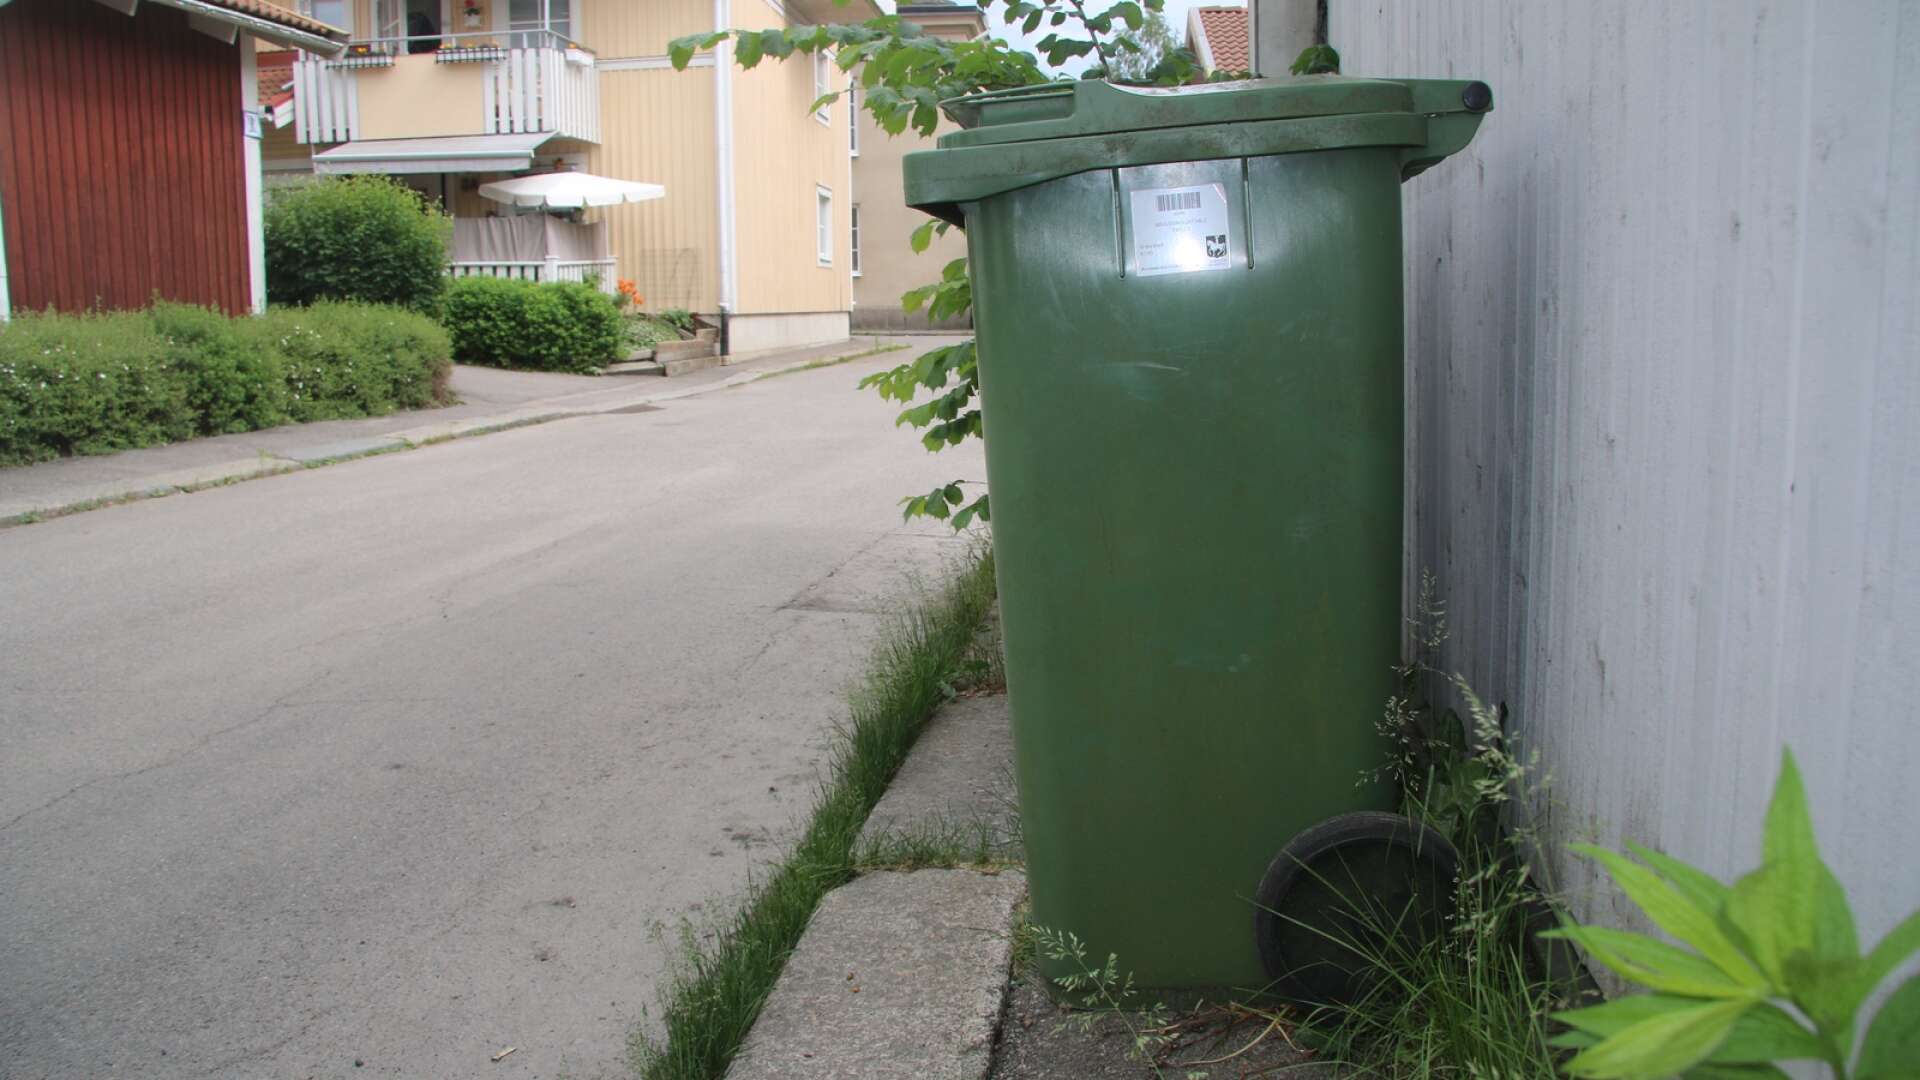 ”Sveriges mest miljöanpassade avfallstaxa” skall premiera de som sköter sin sortering, enligt kommunen själva.